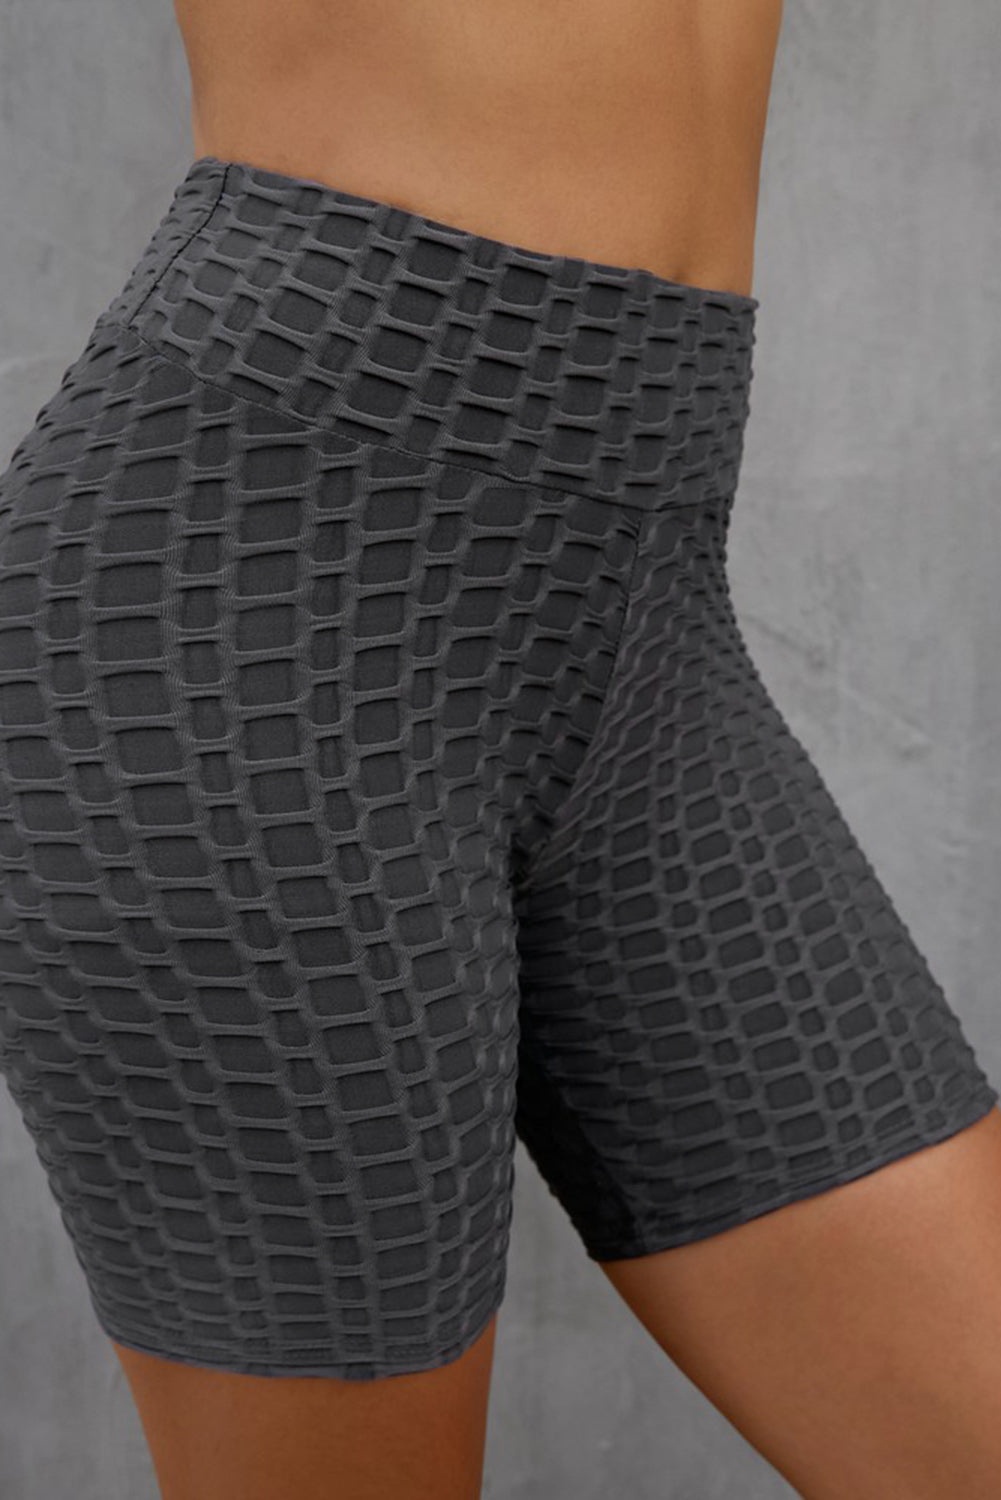 Textured High Waisted Biker Shorts - DromedarShop.com Online Boutique